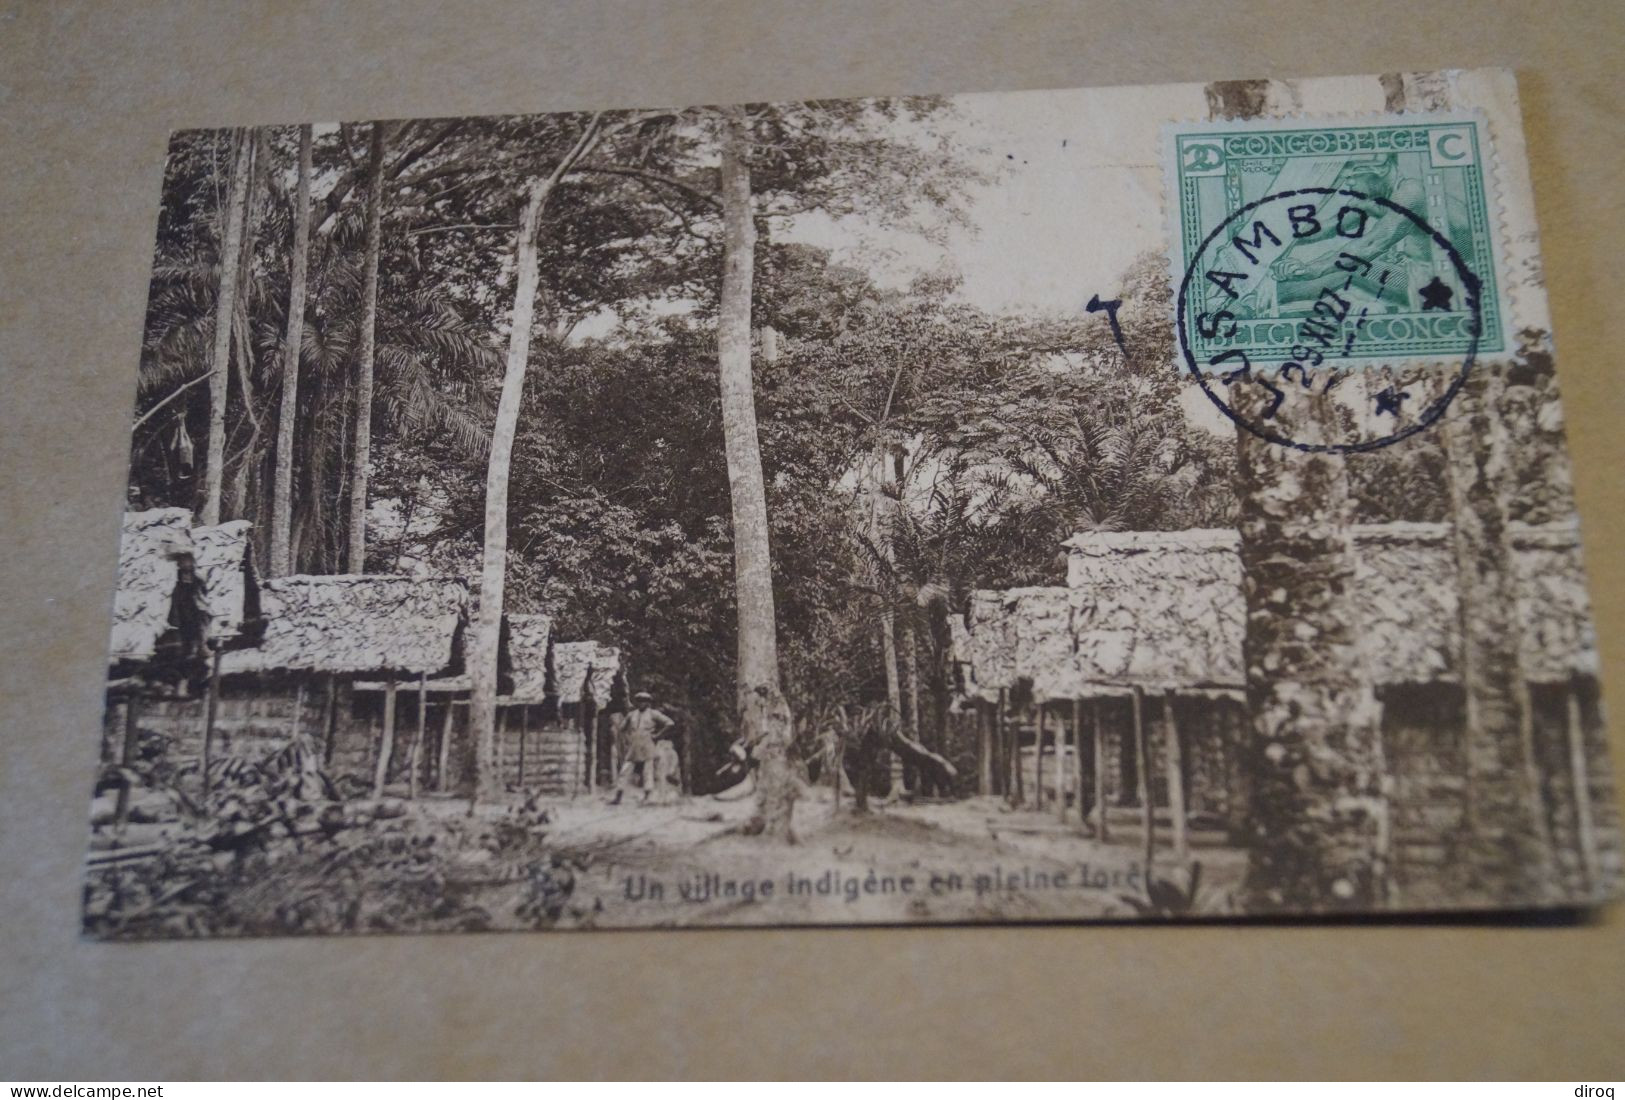 Congo Belge,village Indigène,oblitération De Lusambo 1927,Très Belle Ancienne Carte,à Voyagé,pour Collection - Congo Belga